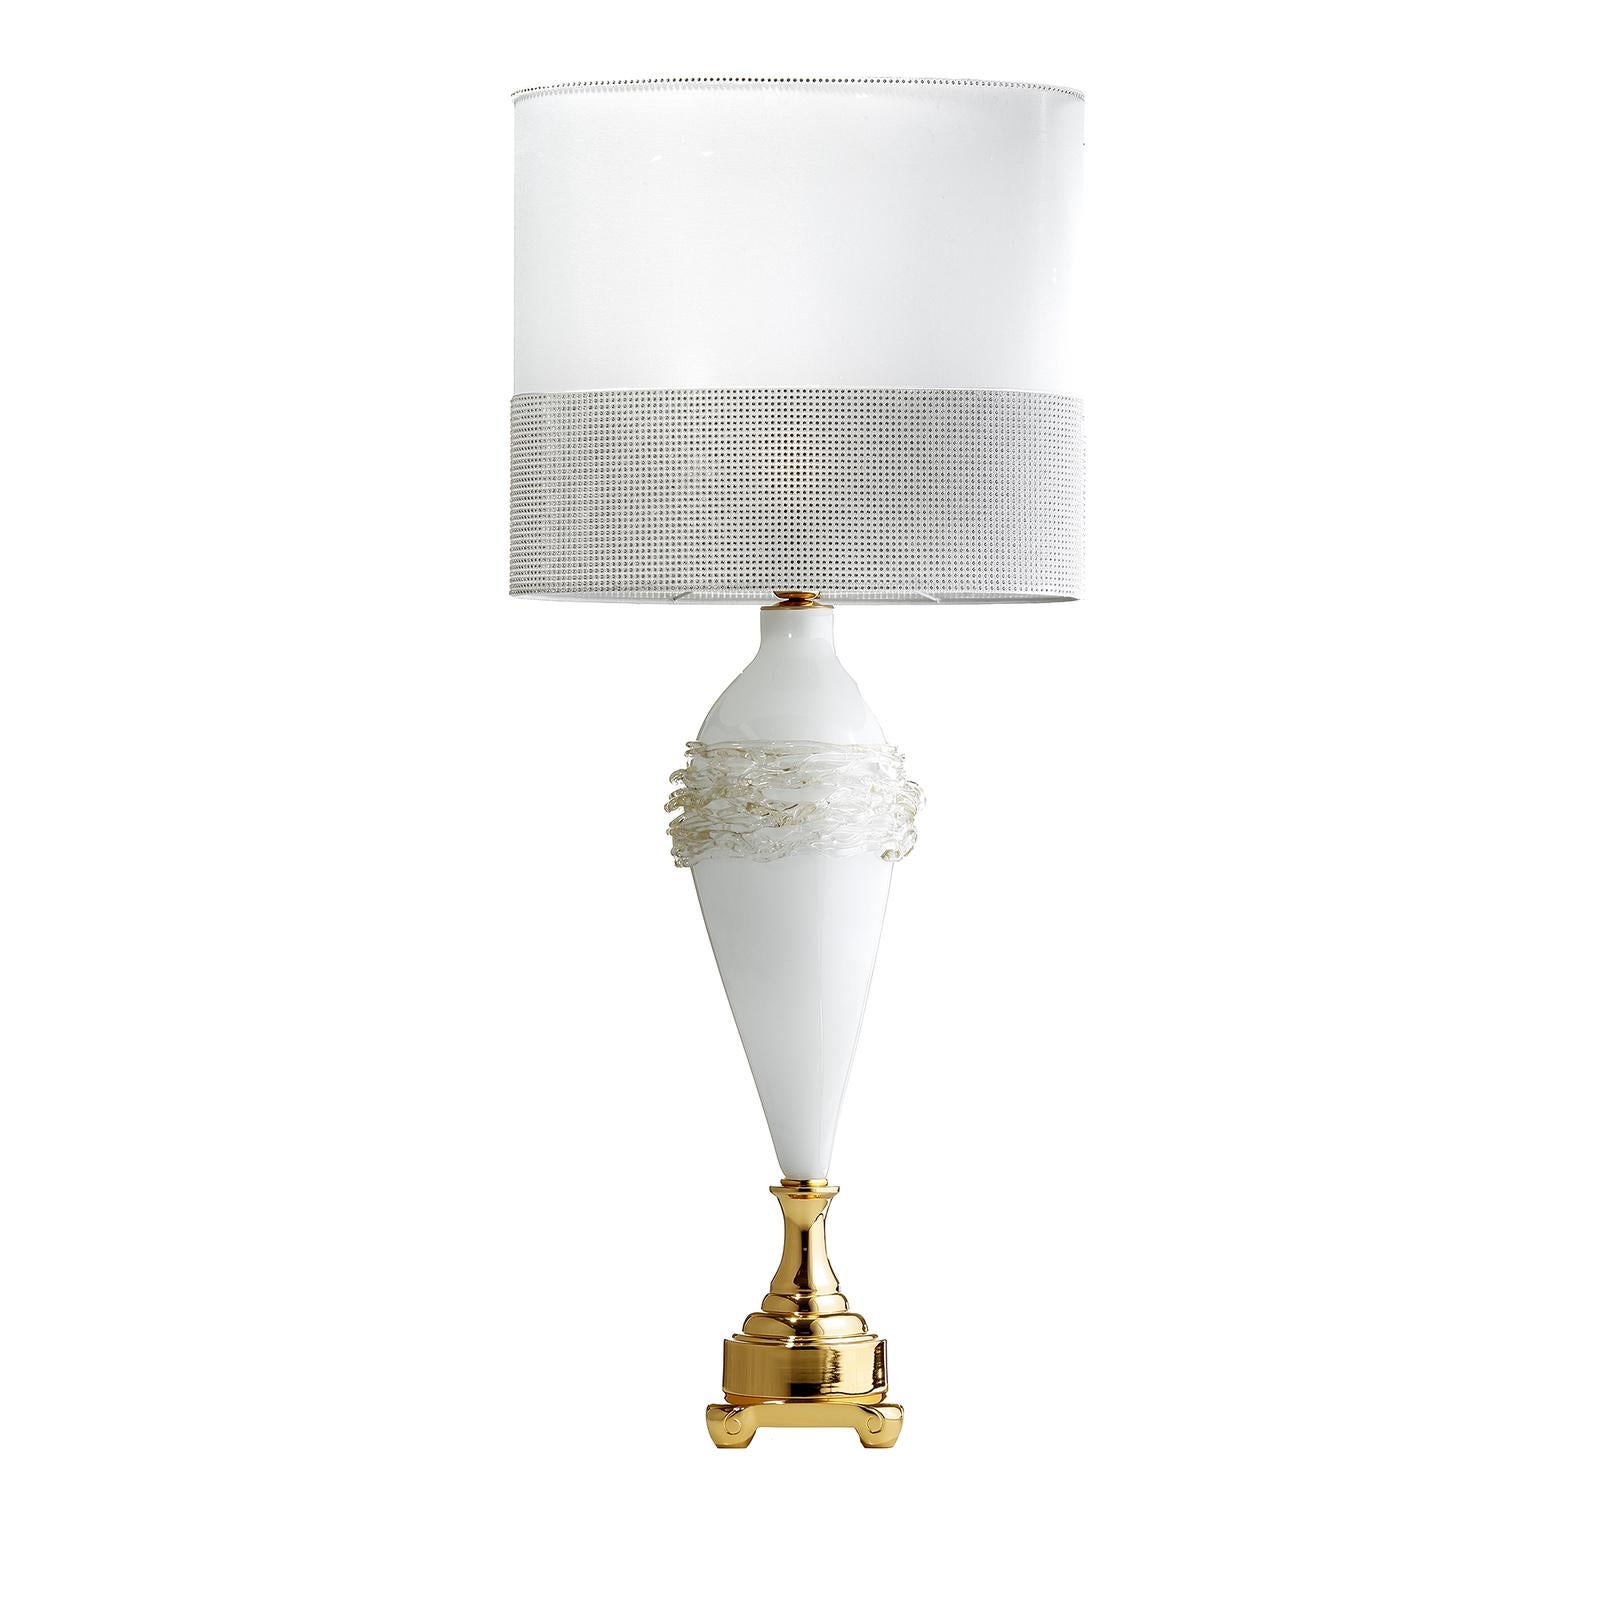 Version plus grande de la lampe de table P-Gold, cette pièce étonnante s'imposera dans une maison contemporaine ou éclectique, où elle peut être associée à une lampe identique pour flanquer un miroir d'entrée ou un cadre de lit, ou illuminer un